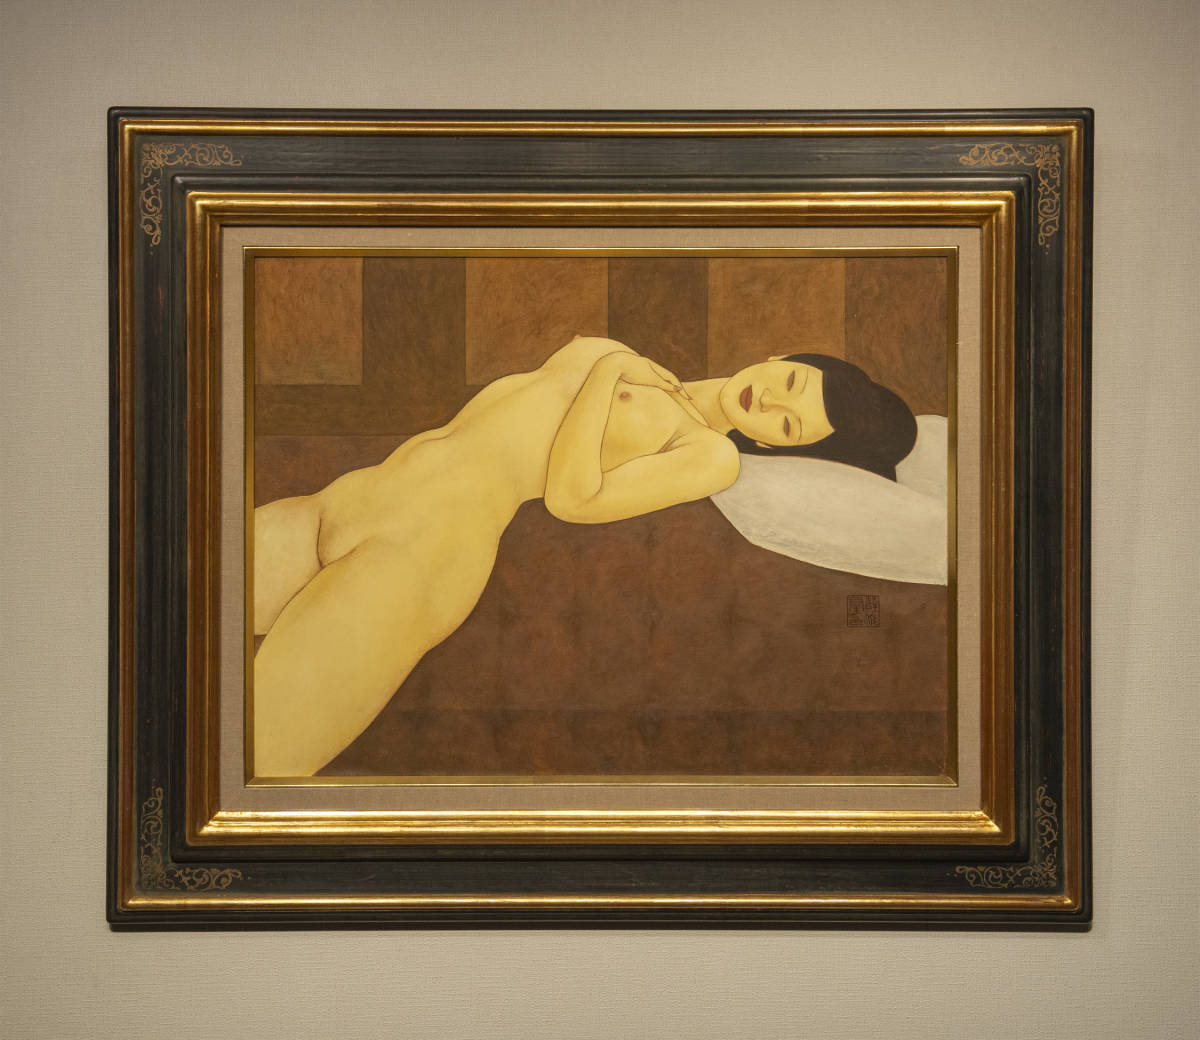 薛雁群 1990年代初期 女人体 油画 額装 真作保証 中国 絵画 現代美術